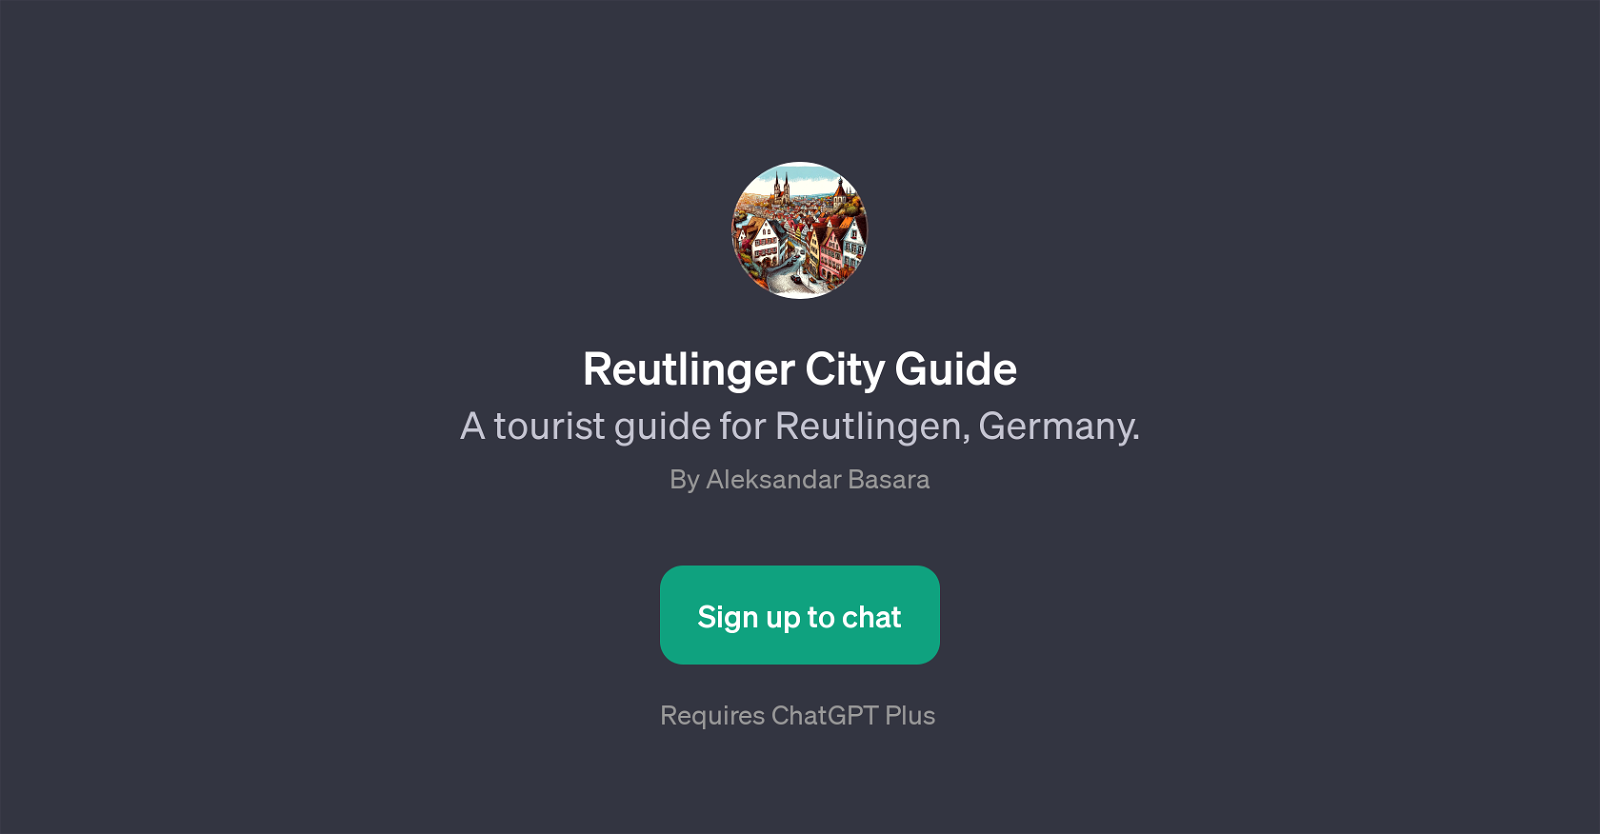 Reutlinger City Guide website